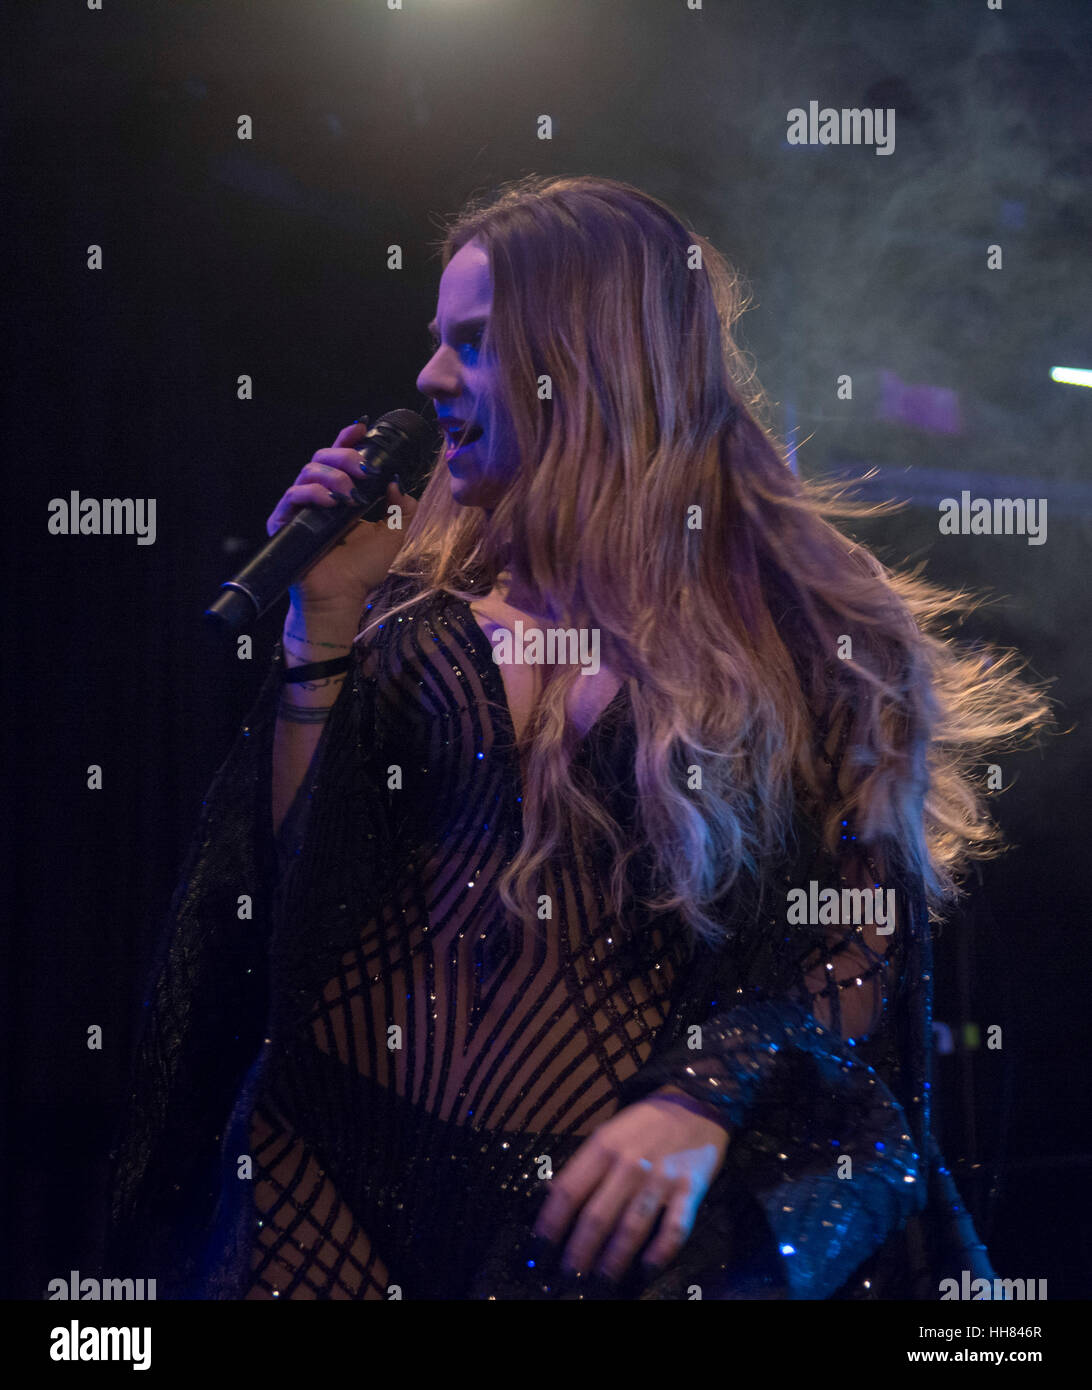 Londres, Reino Unido. 17 de enero de 2017. Cantante Jojo actúa en directo en un concierto en el KOKO club de música en Camden. Crédito de la foto: Acceso/Alamy Live News Foto de stock